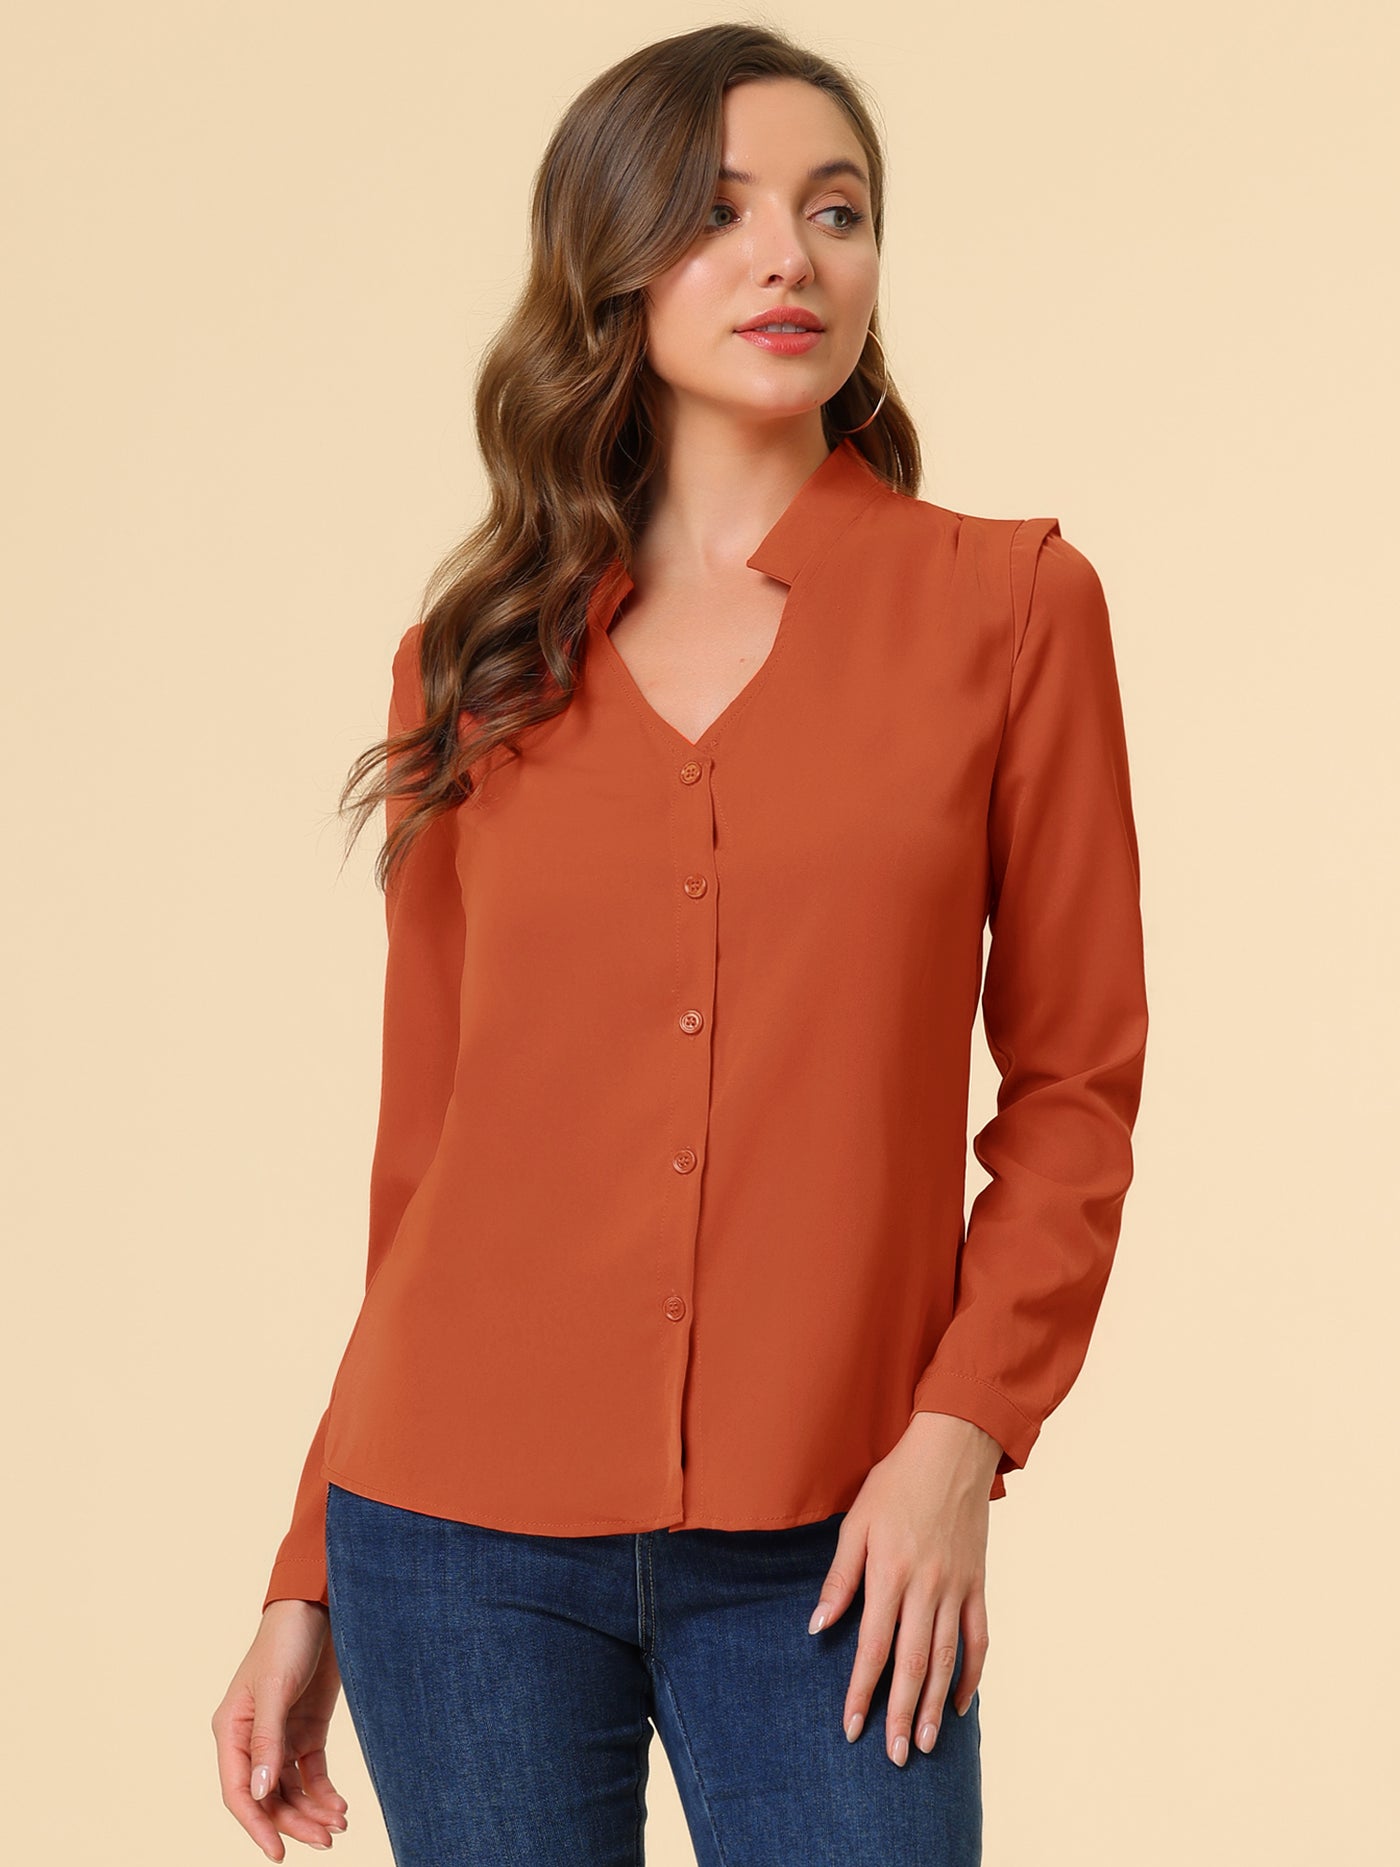 Allegra K Work Office Blouse Button Up Long Sleeve V Neck Chiffon Shirt